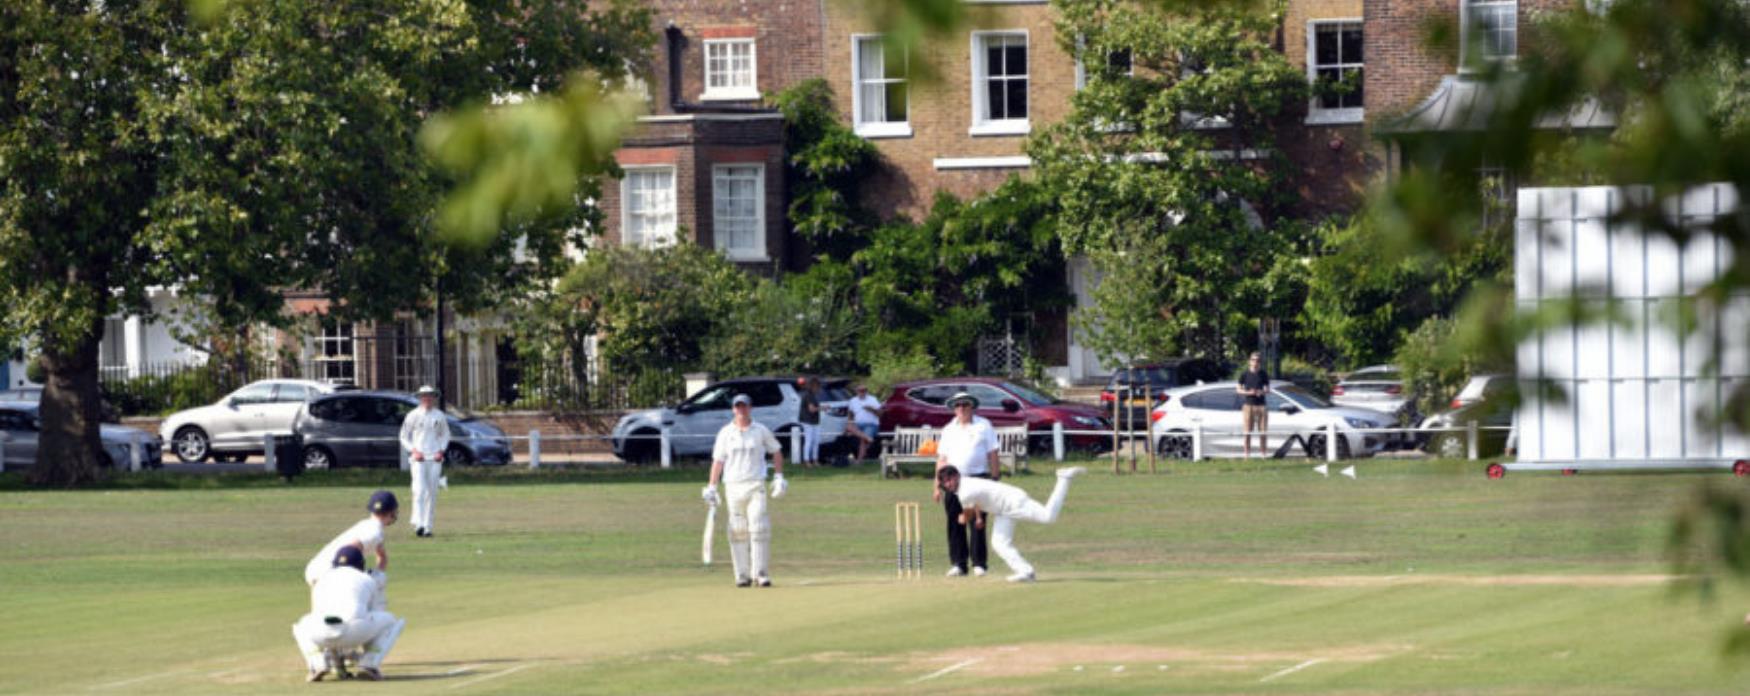 Playing cricket at Kew Green